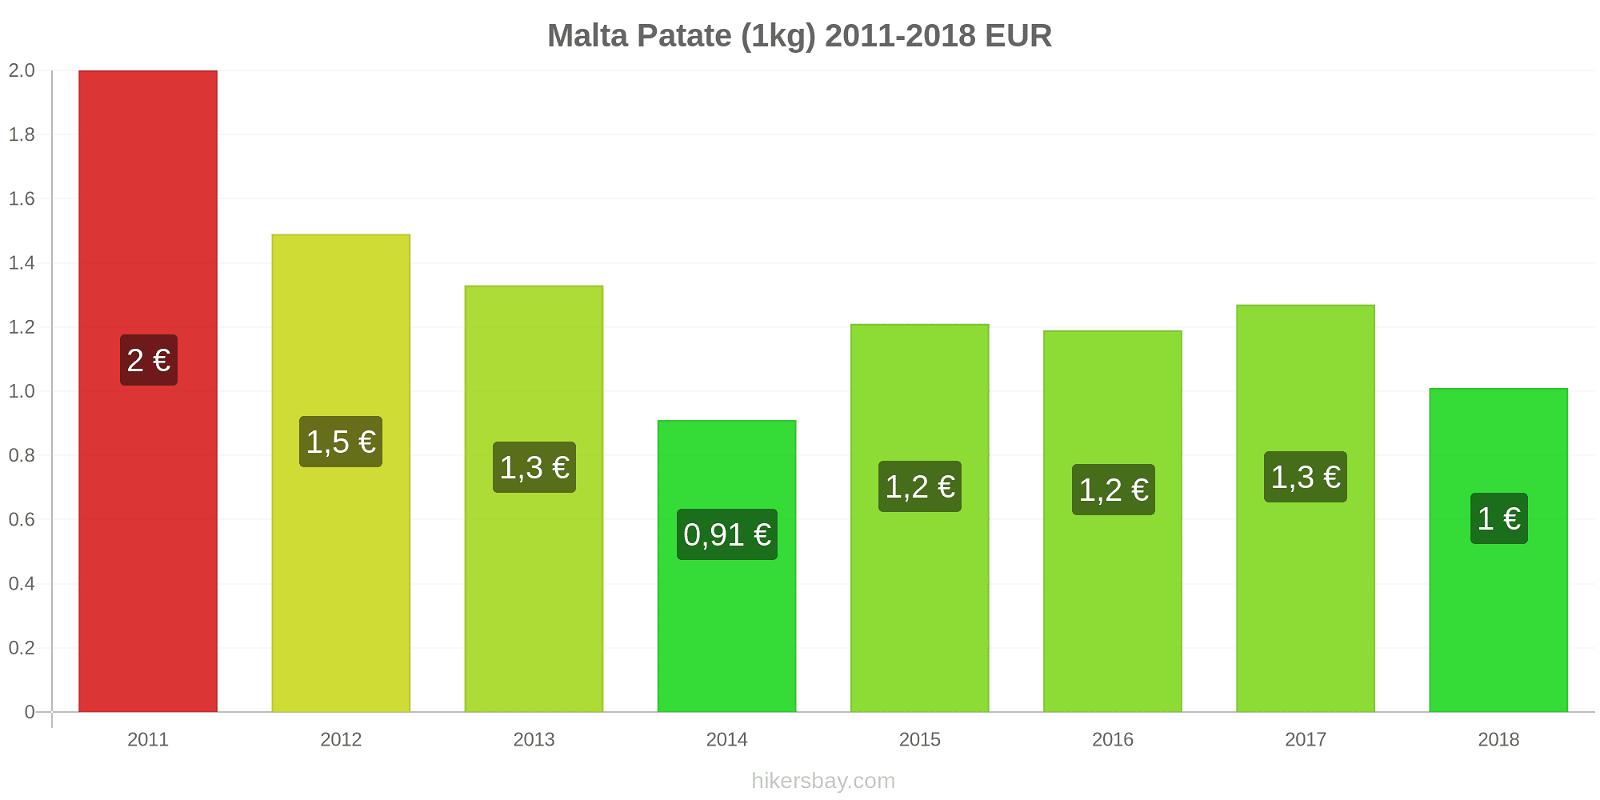 Malta cambi di prezzo Patate (1kg) hikersbay.com